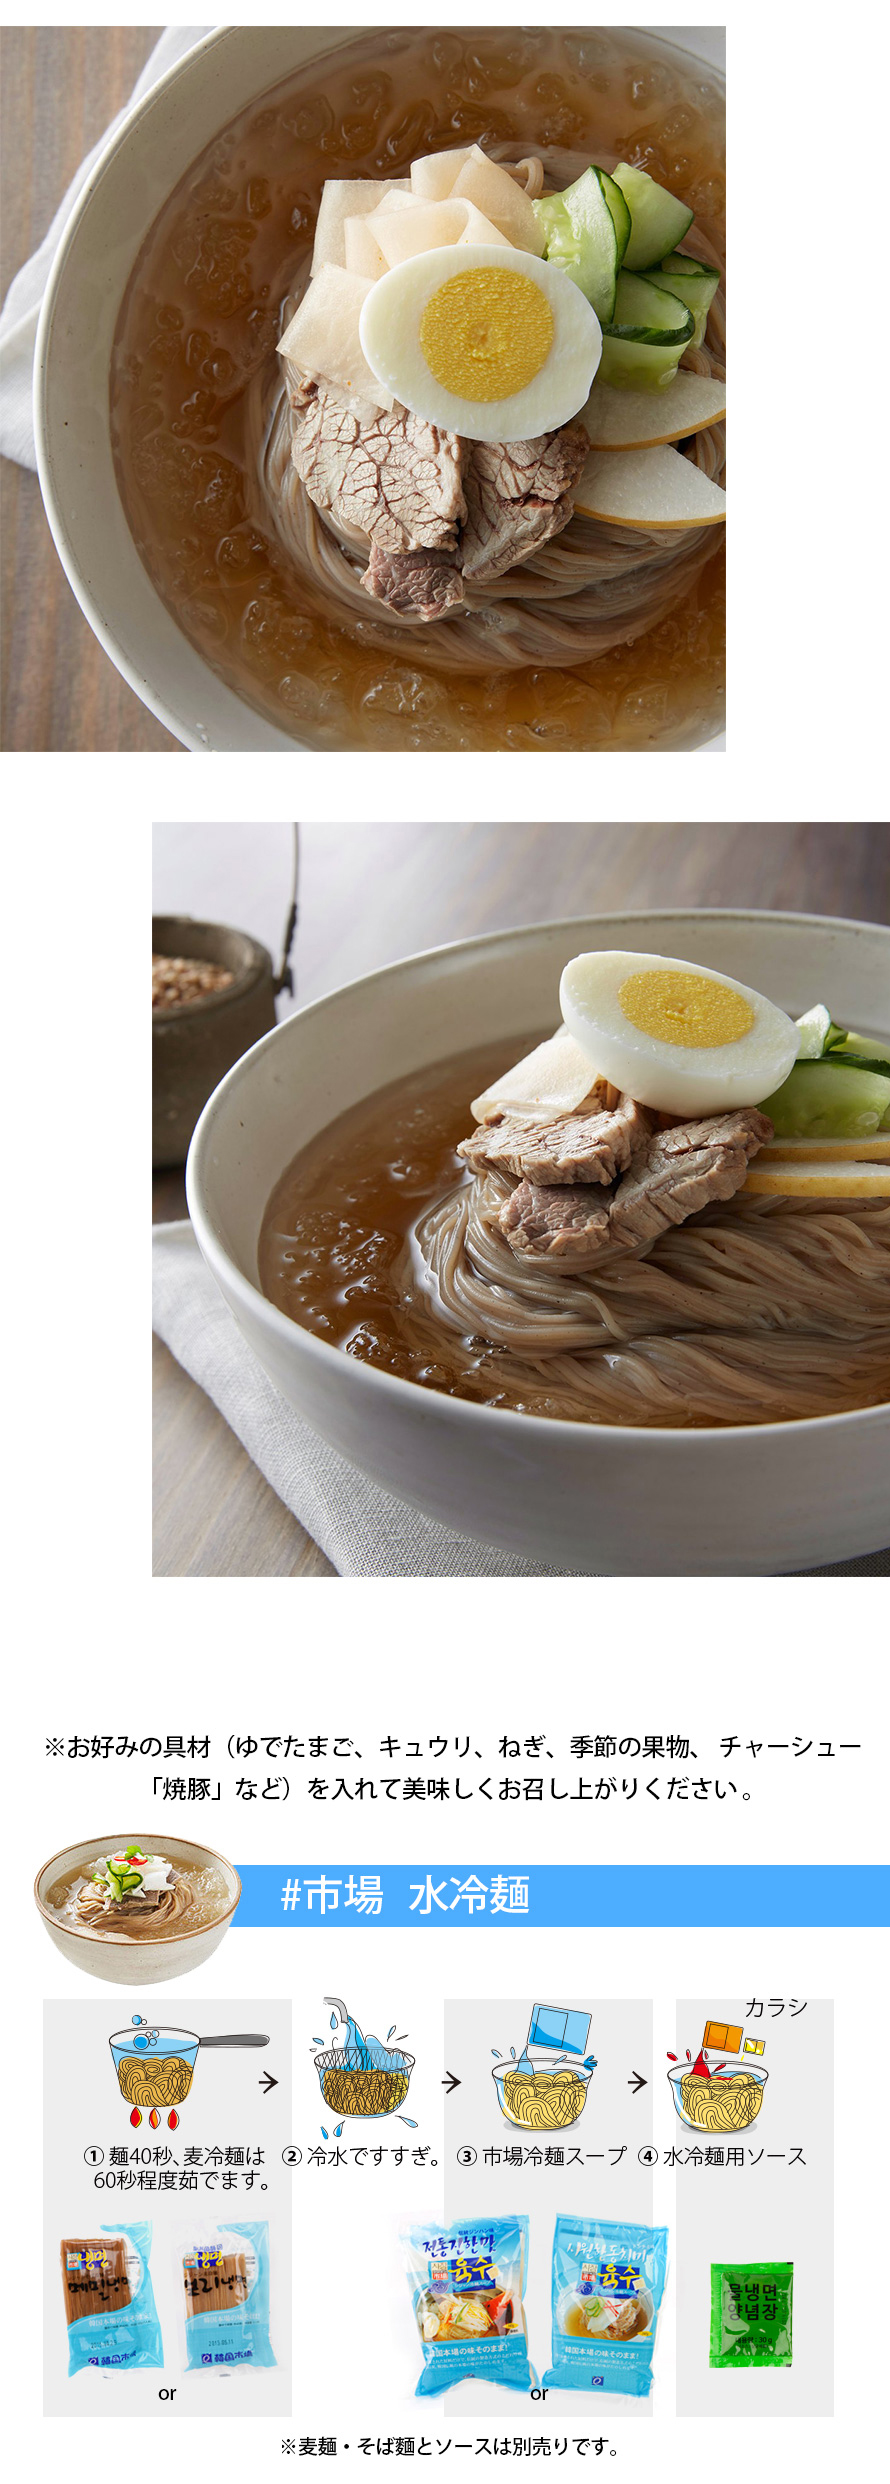 [市場]ジンハン冷麺スープ340g/韓国商品 韓国食材 韓国冷麺 韓国スープ